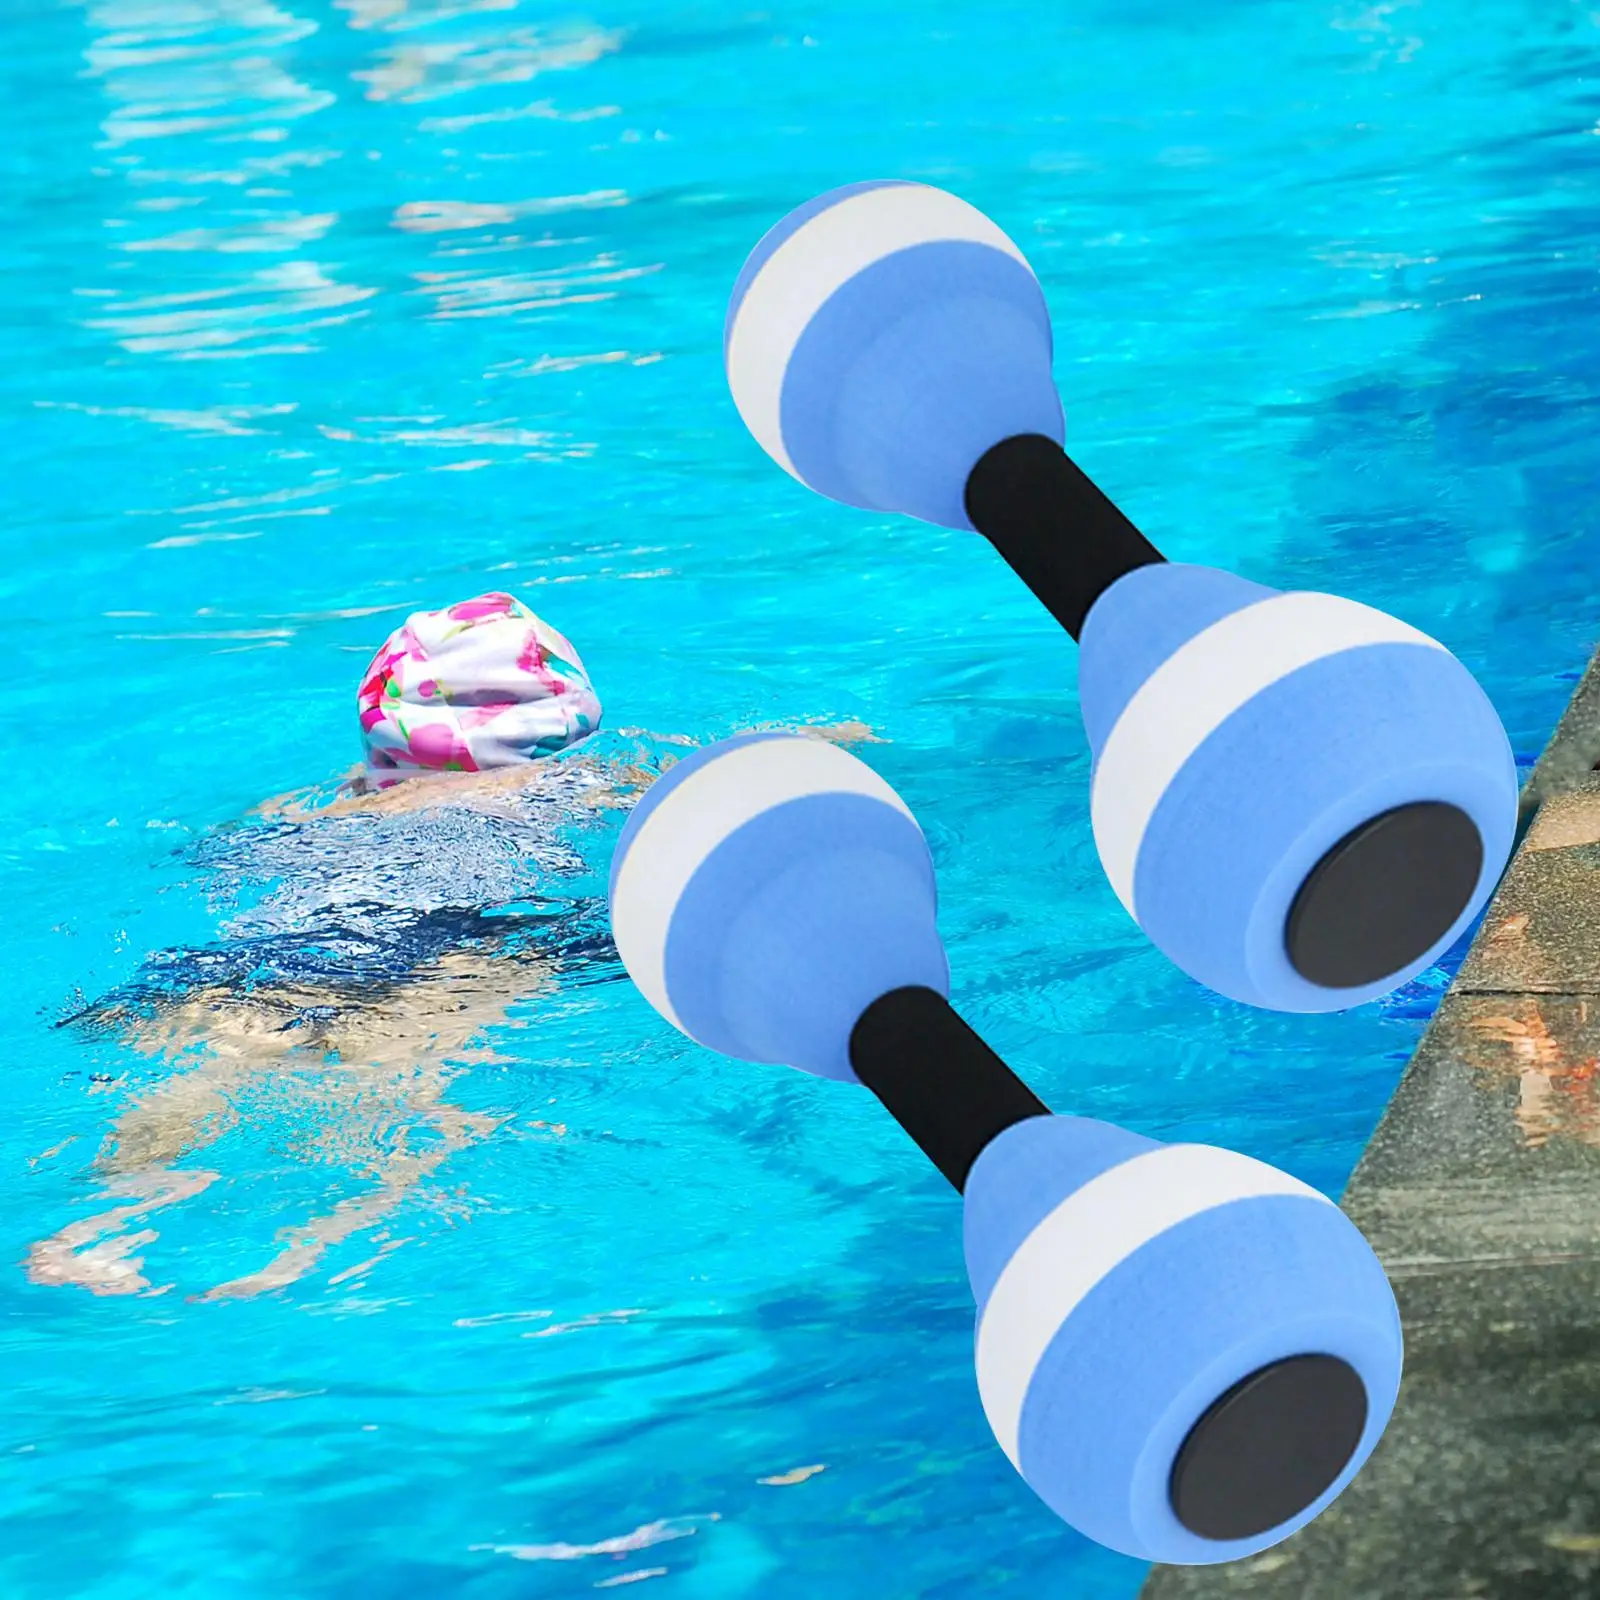 Aquatic dumbbells, water aerobics dumbbell pool resistance, hand bars